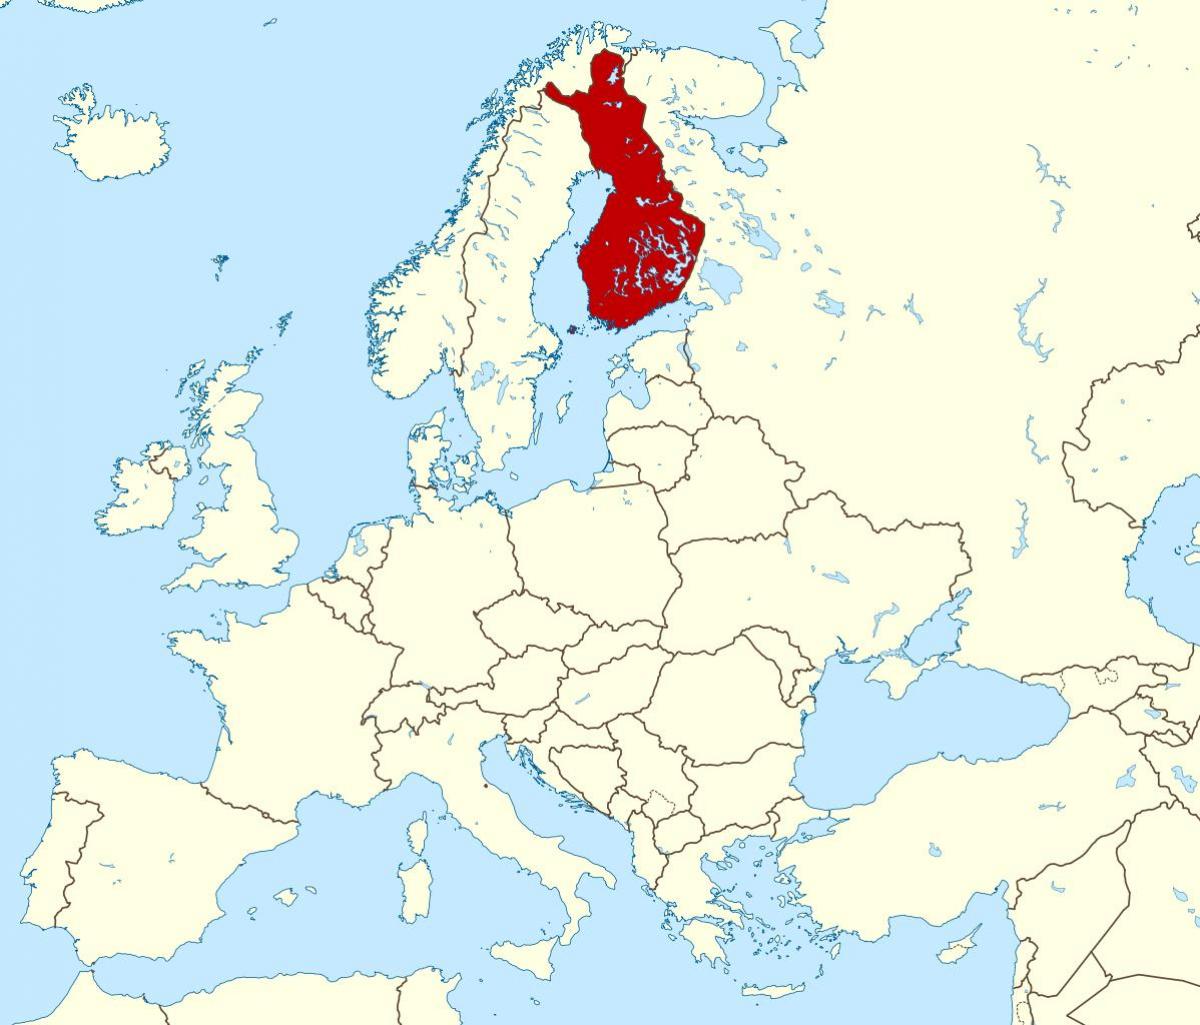 世界地図を示すフィンランド